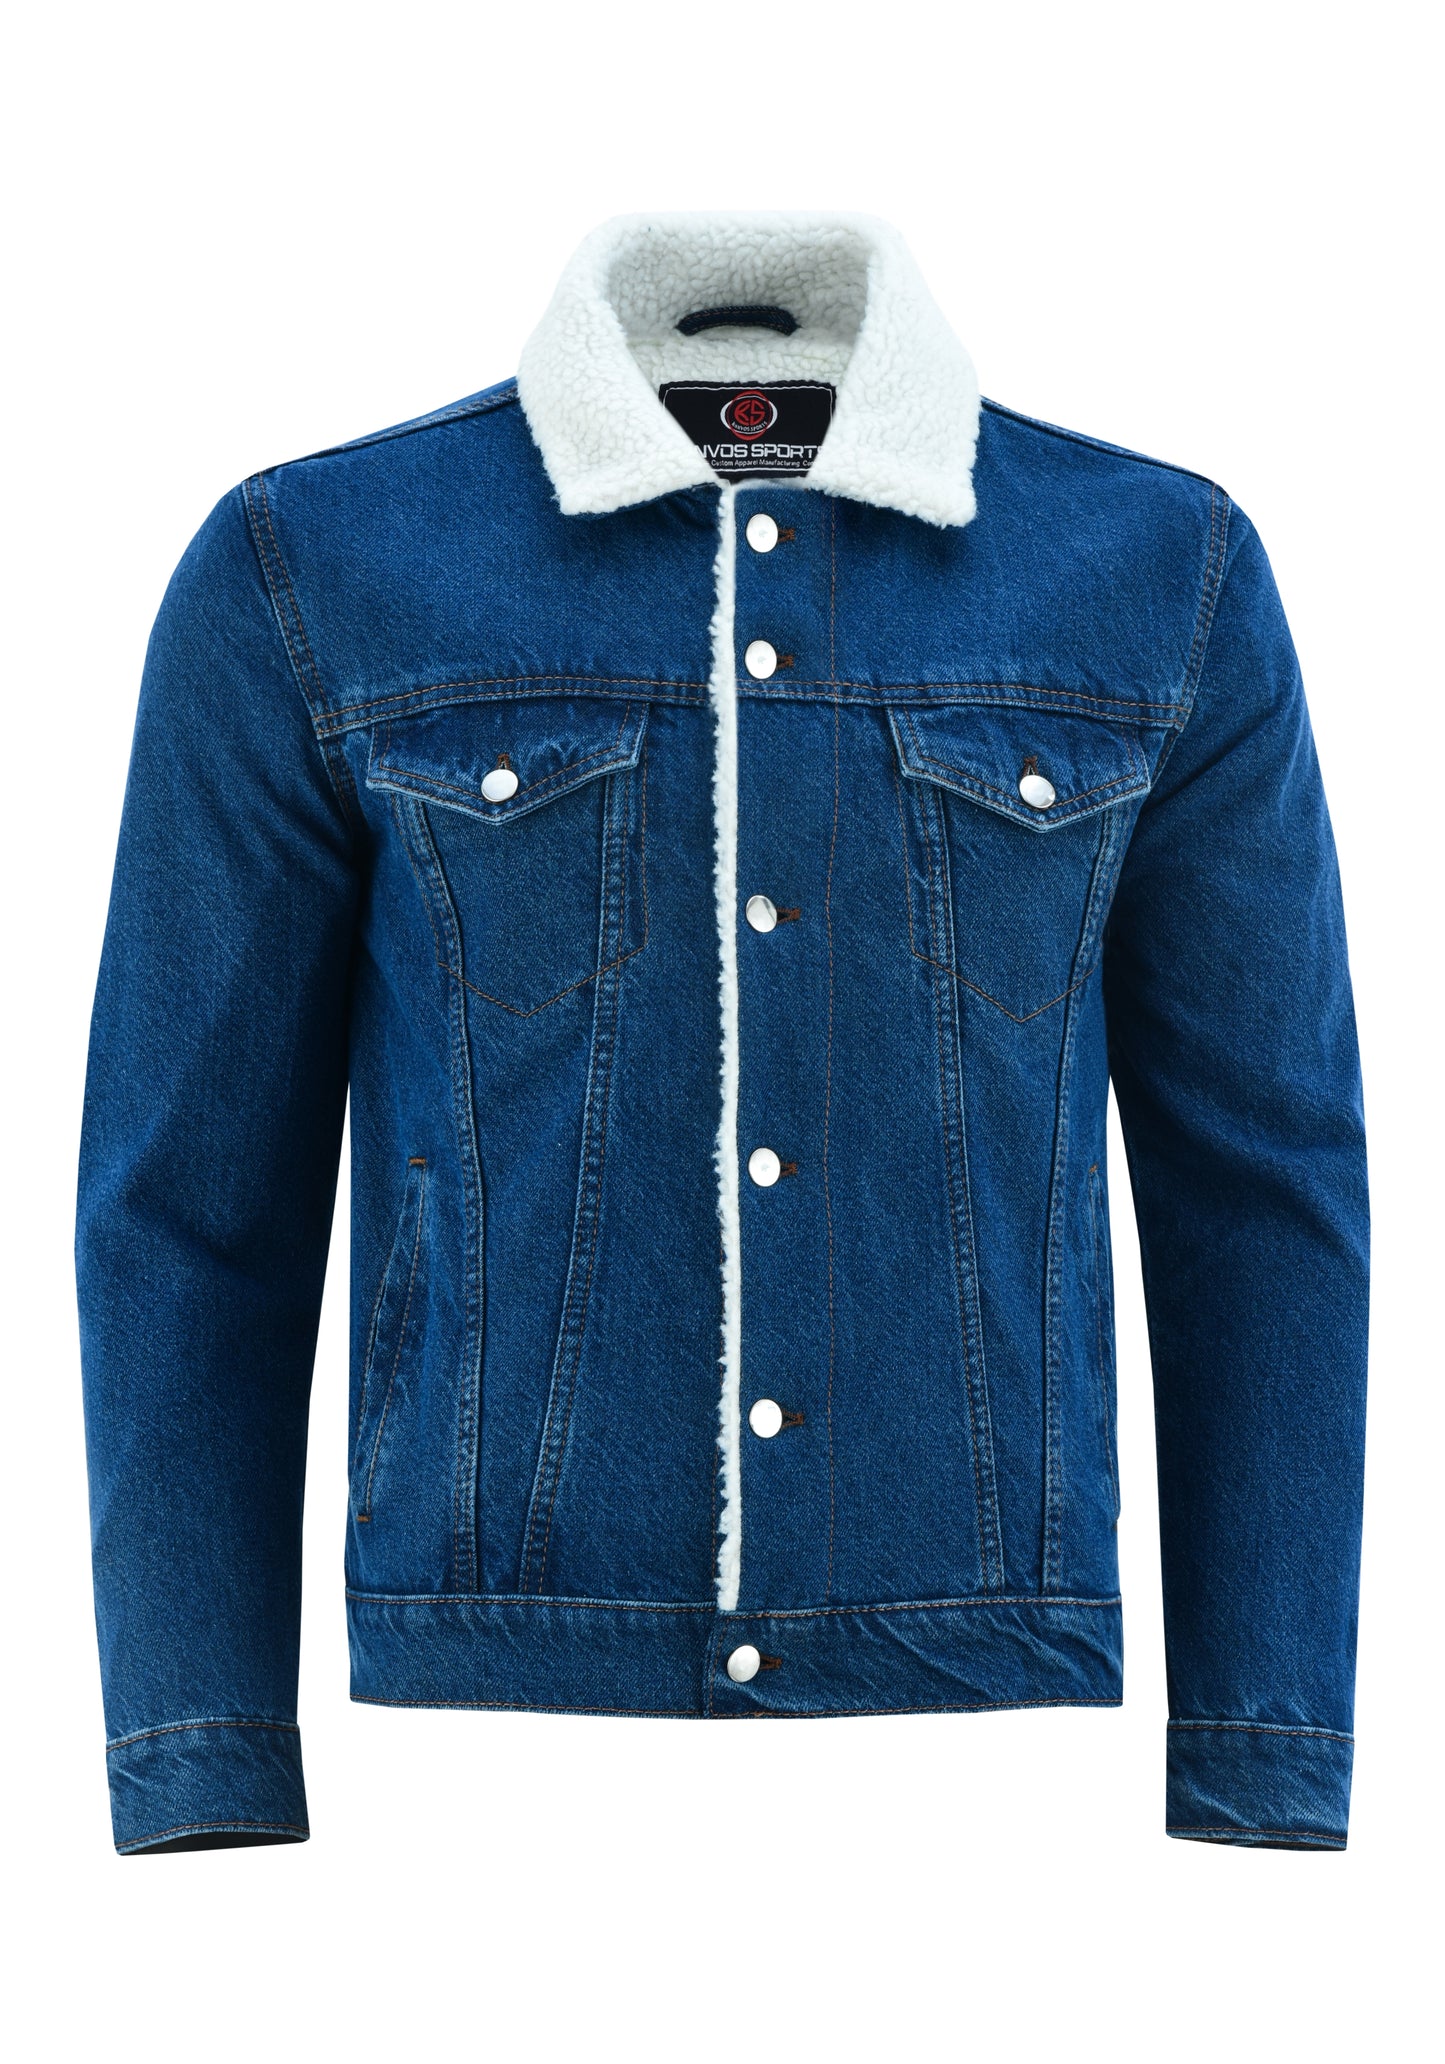 KS101 Blue Denim Fur Jackets Hip-hop Style  Kanvos Sports